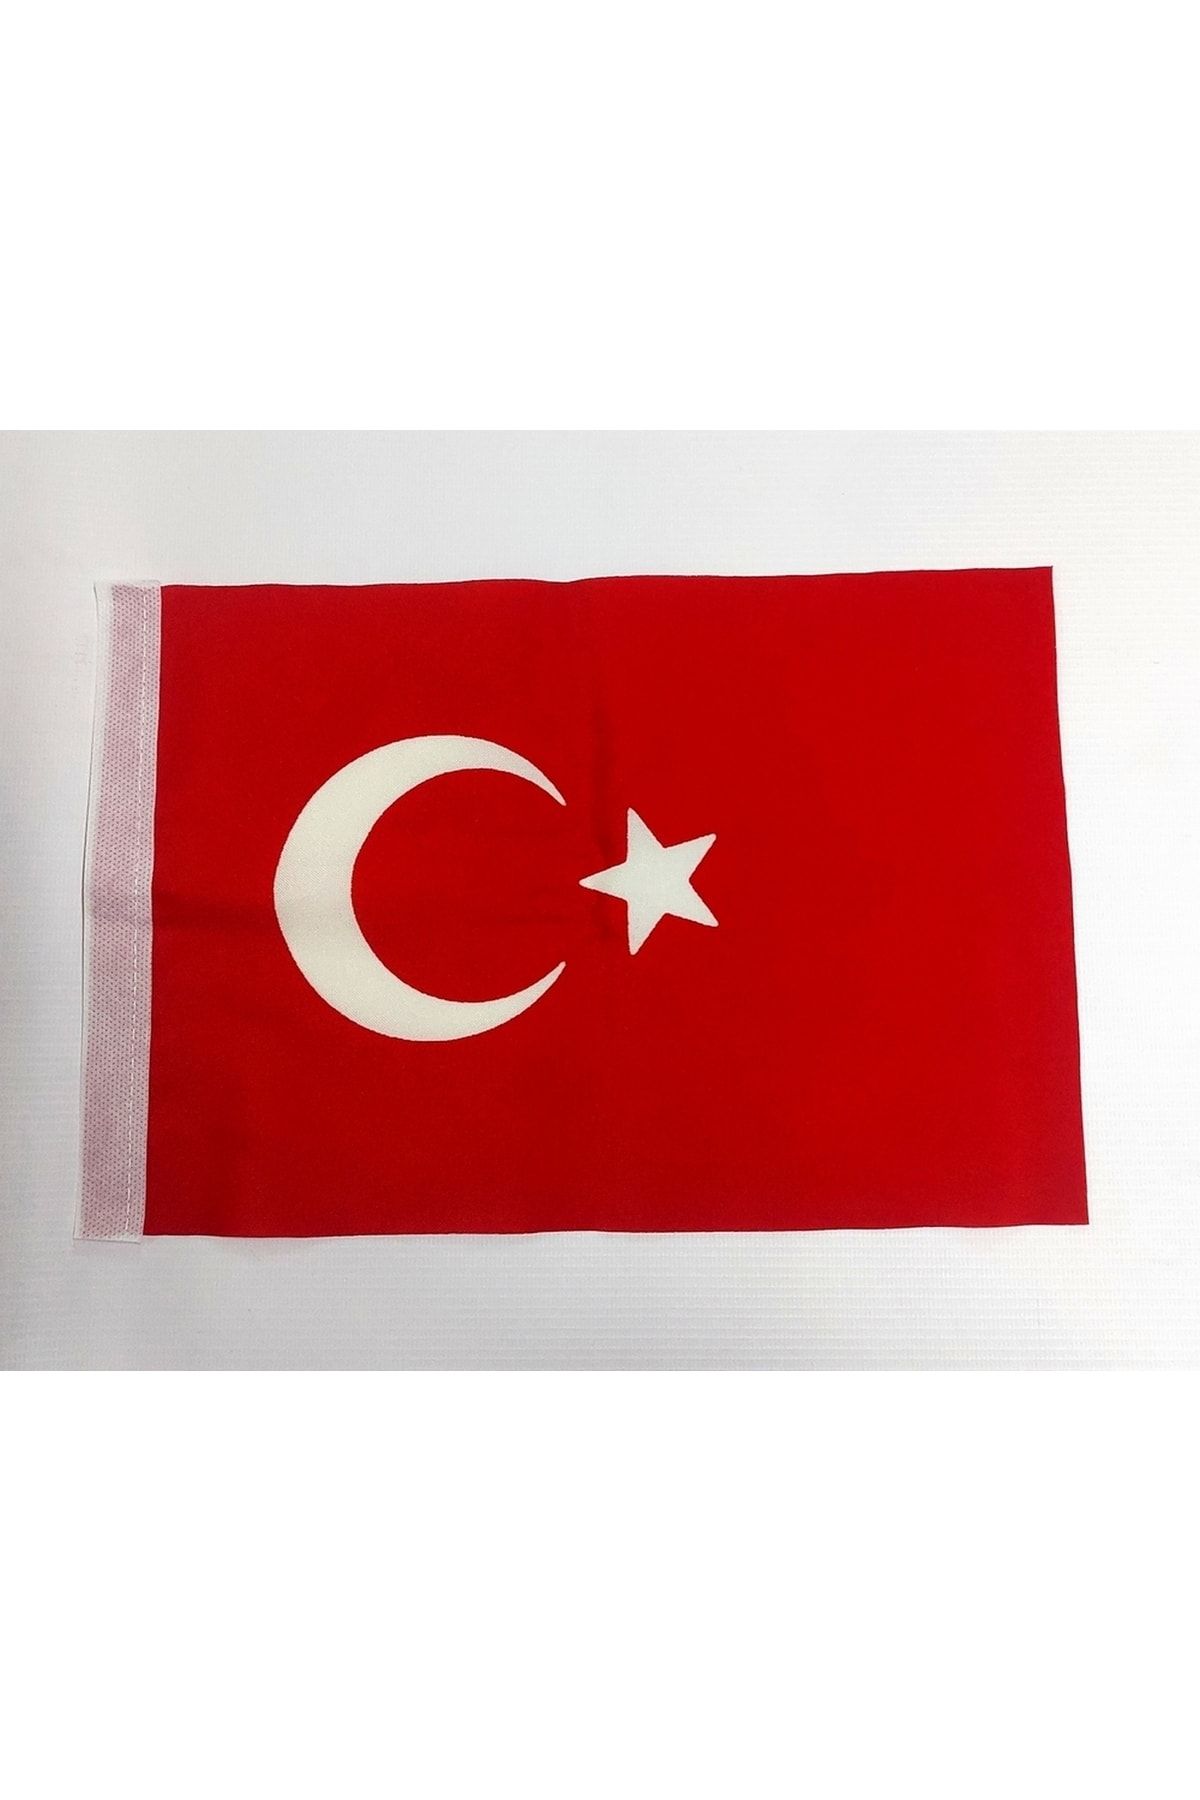 KALE Türk Bayrağı 50 X 75